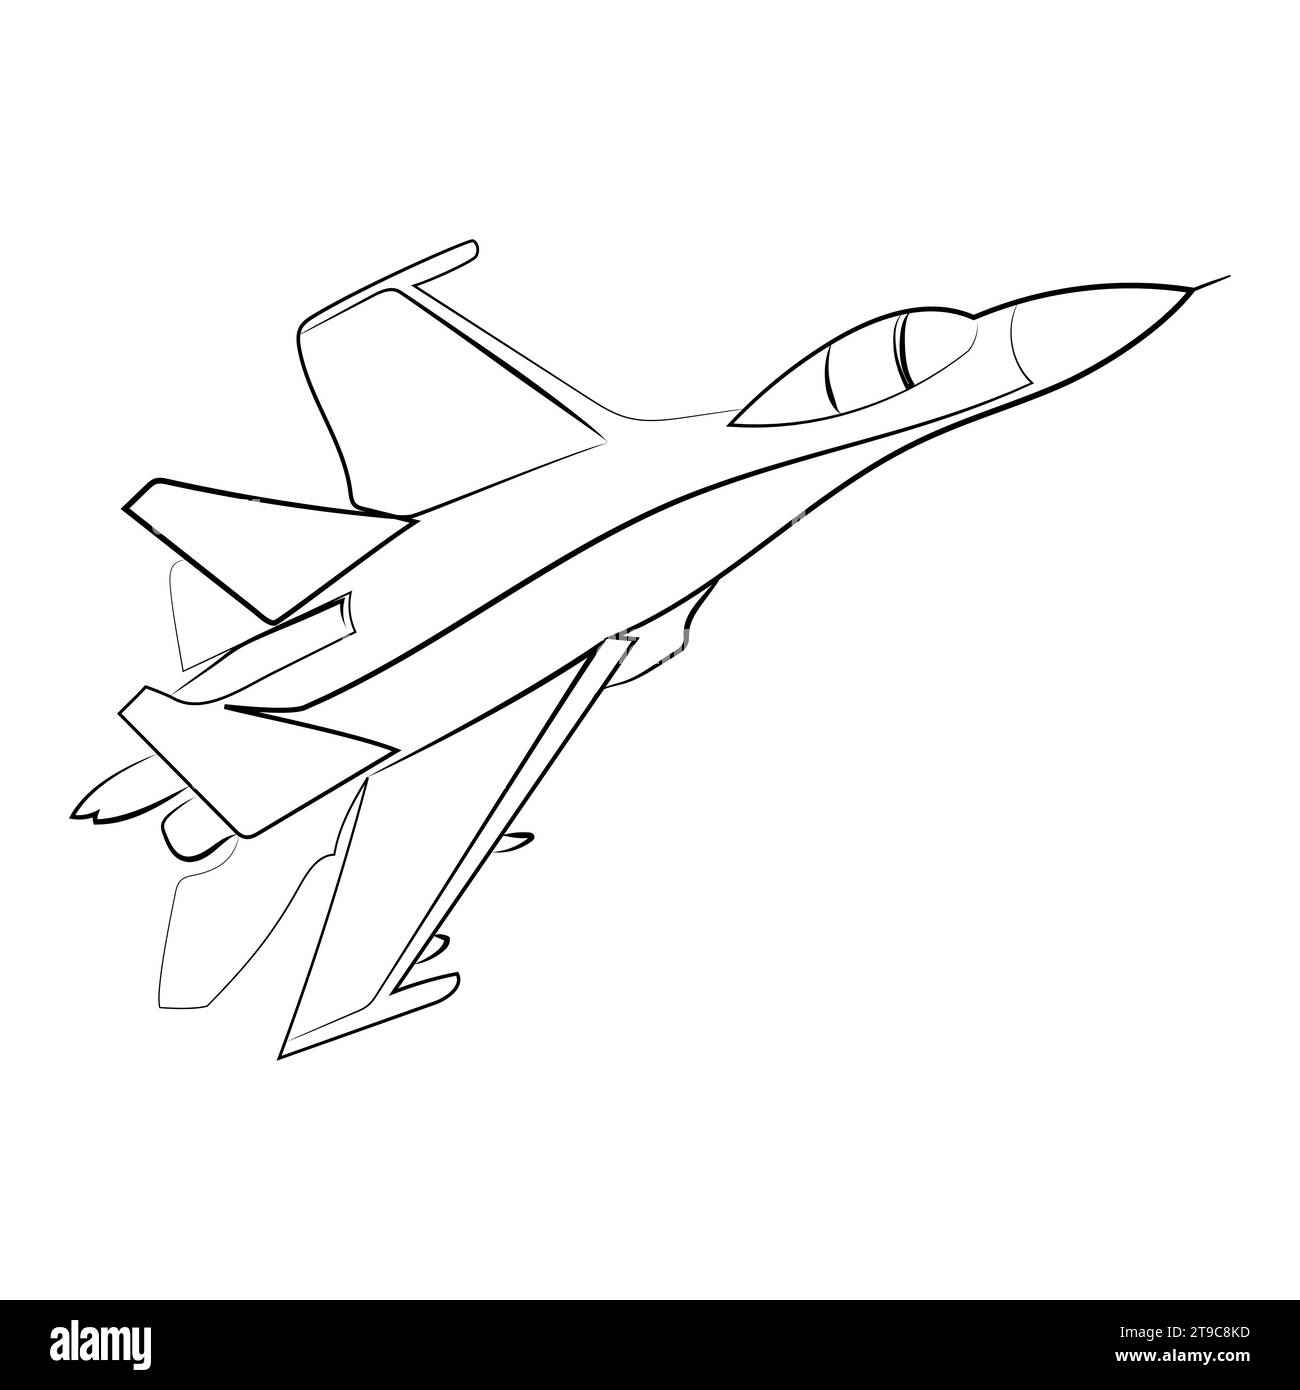 Sukhoi su-27 Flanker dessin de ligne minimaliste illustration vectorielle.illustration d'esquisse d'avion militaire ukrainien Illustration de Vecteur